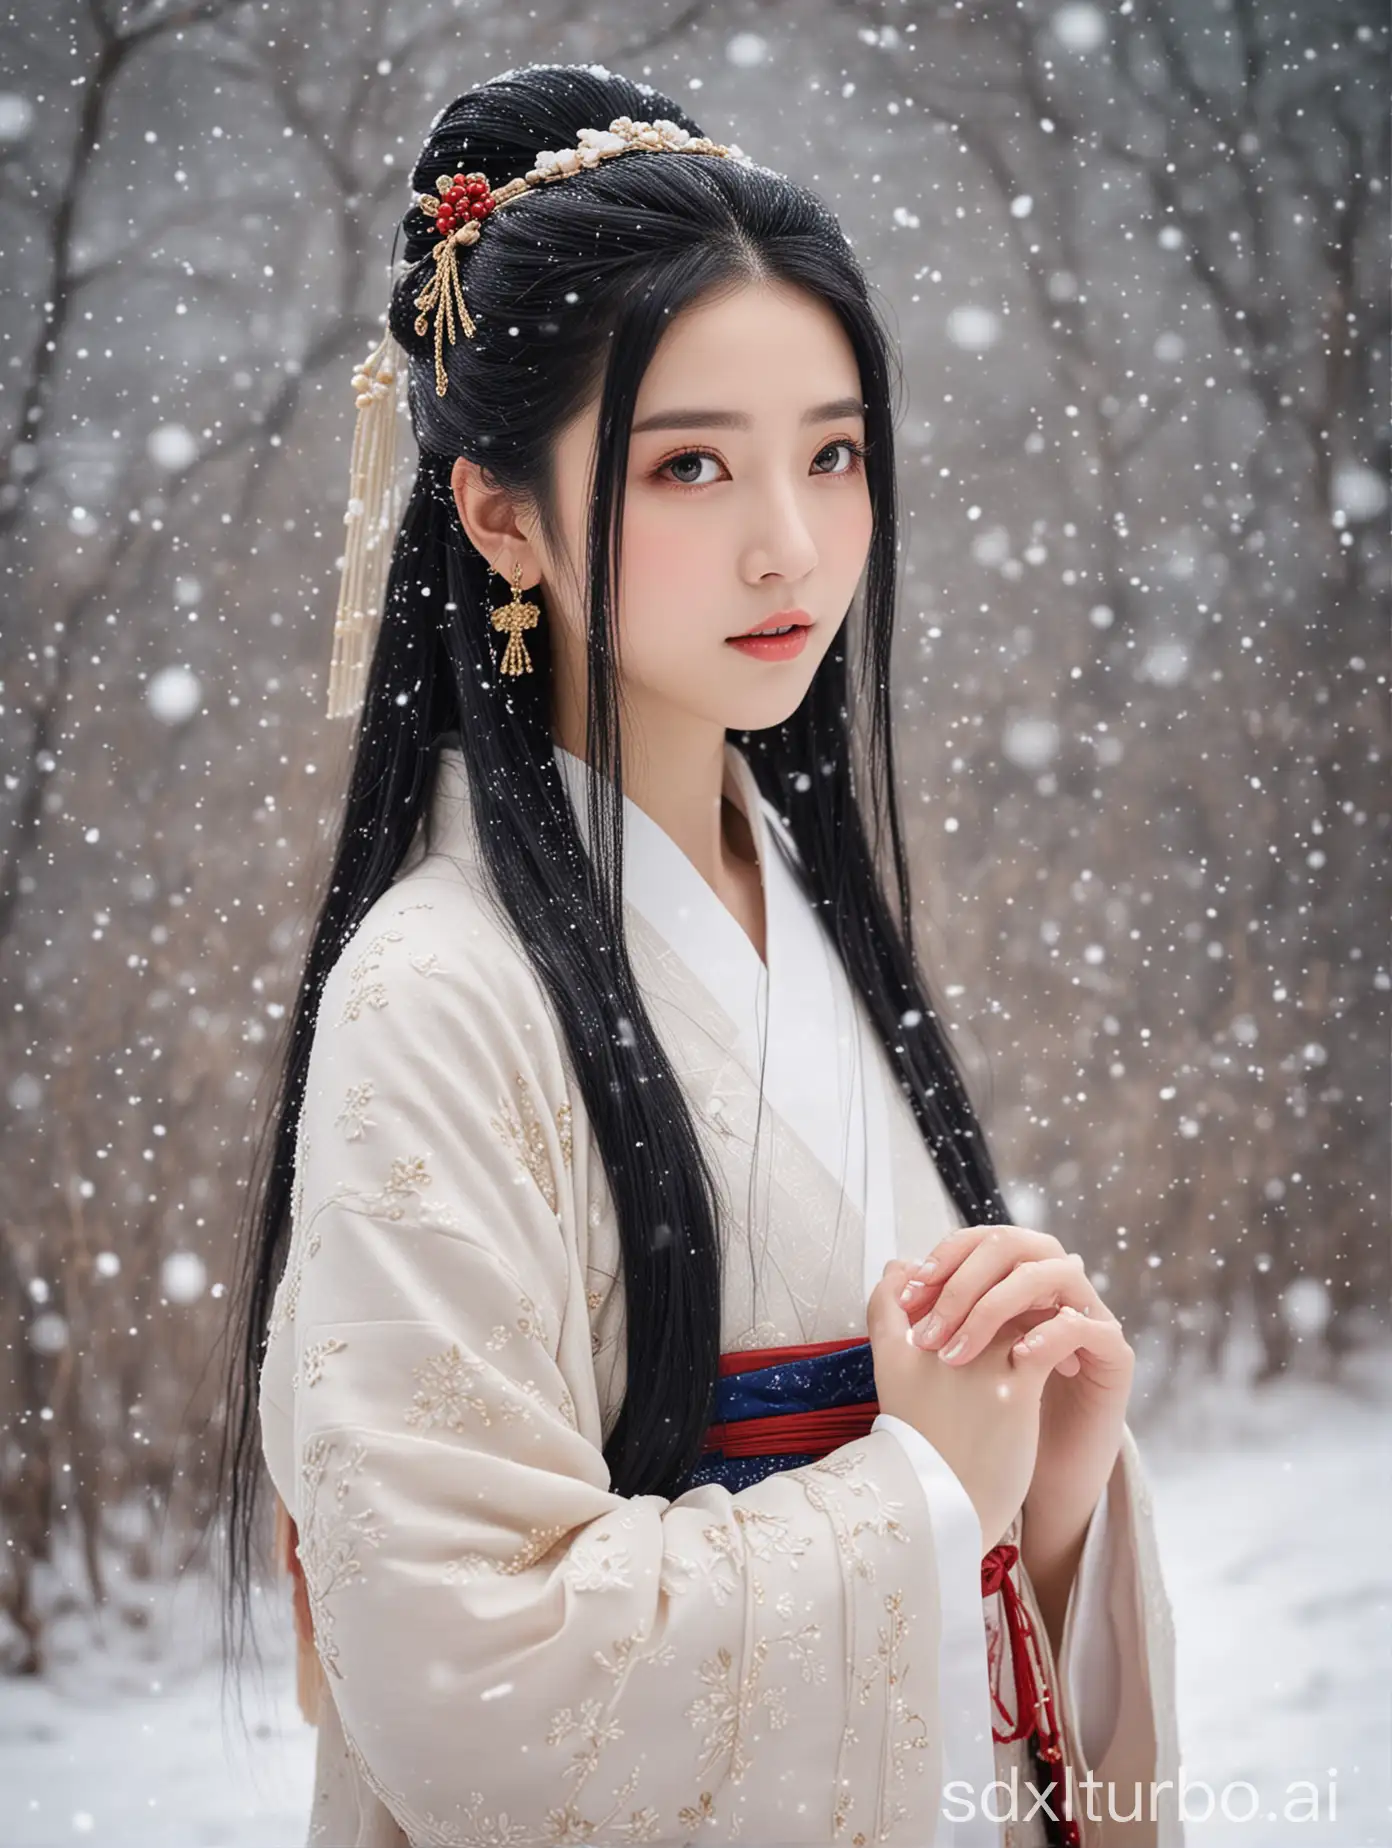 a girl, hanfu dress, black hair, long hair, hair ornament, snowing